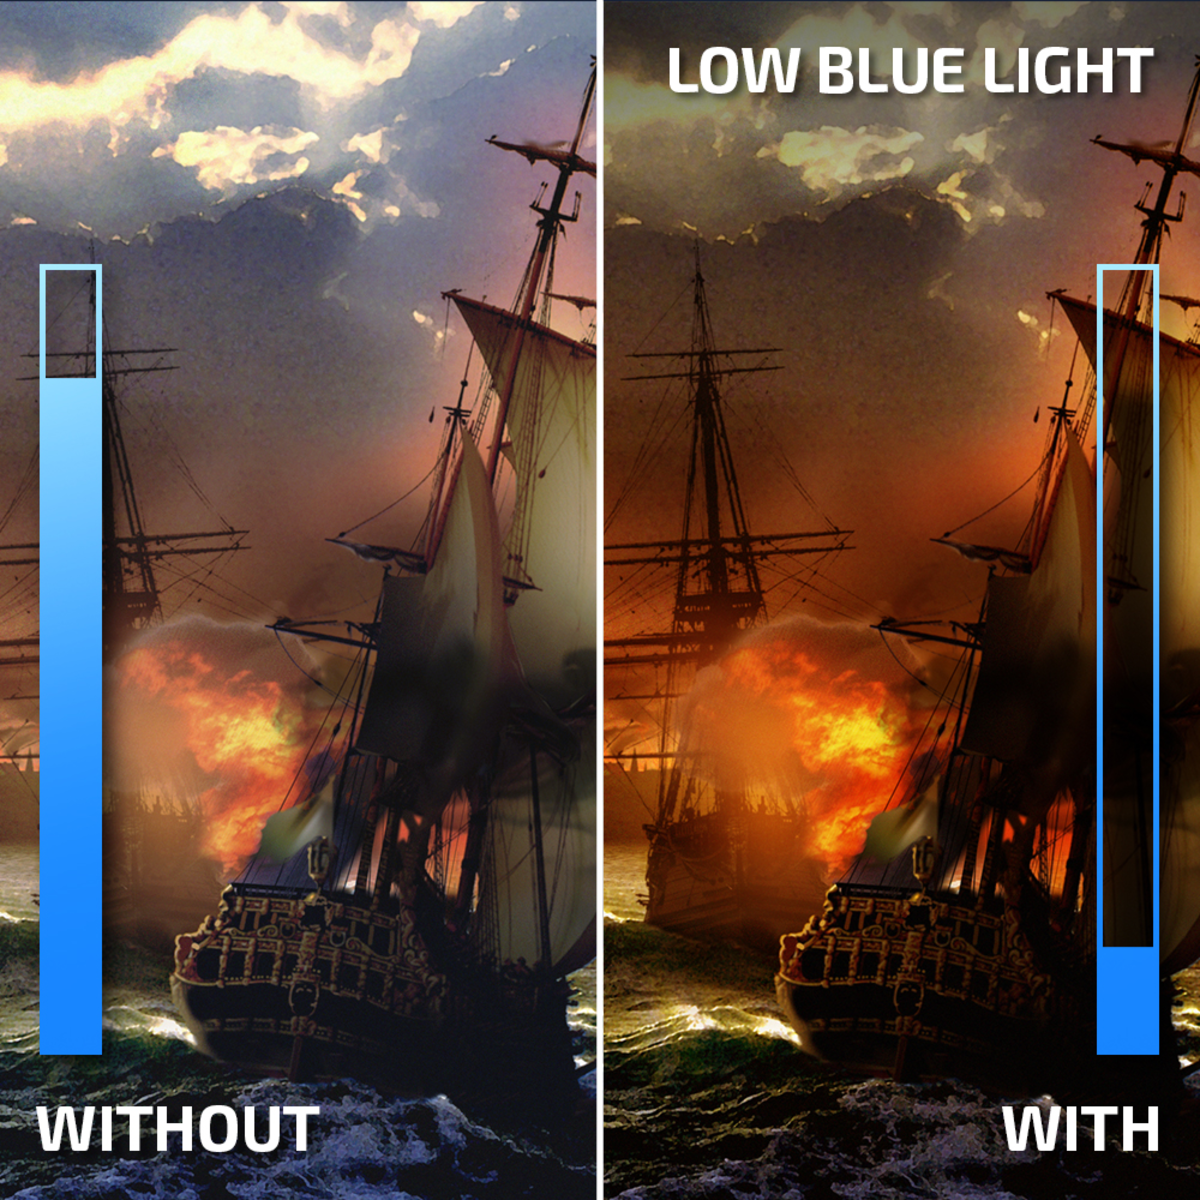 Mode AOC Low Blue Light (Faible lumière bleue)